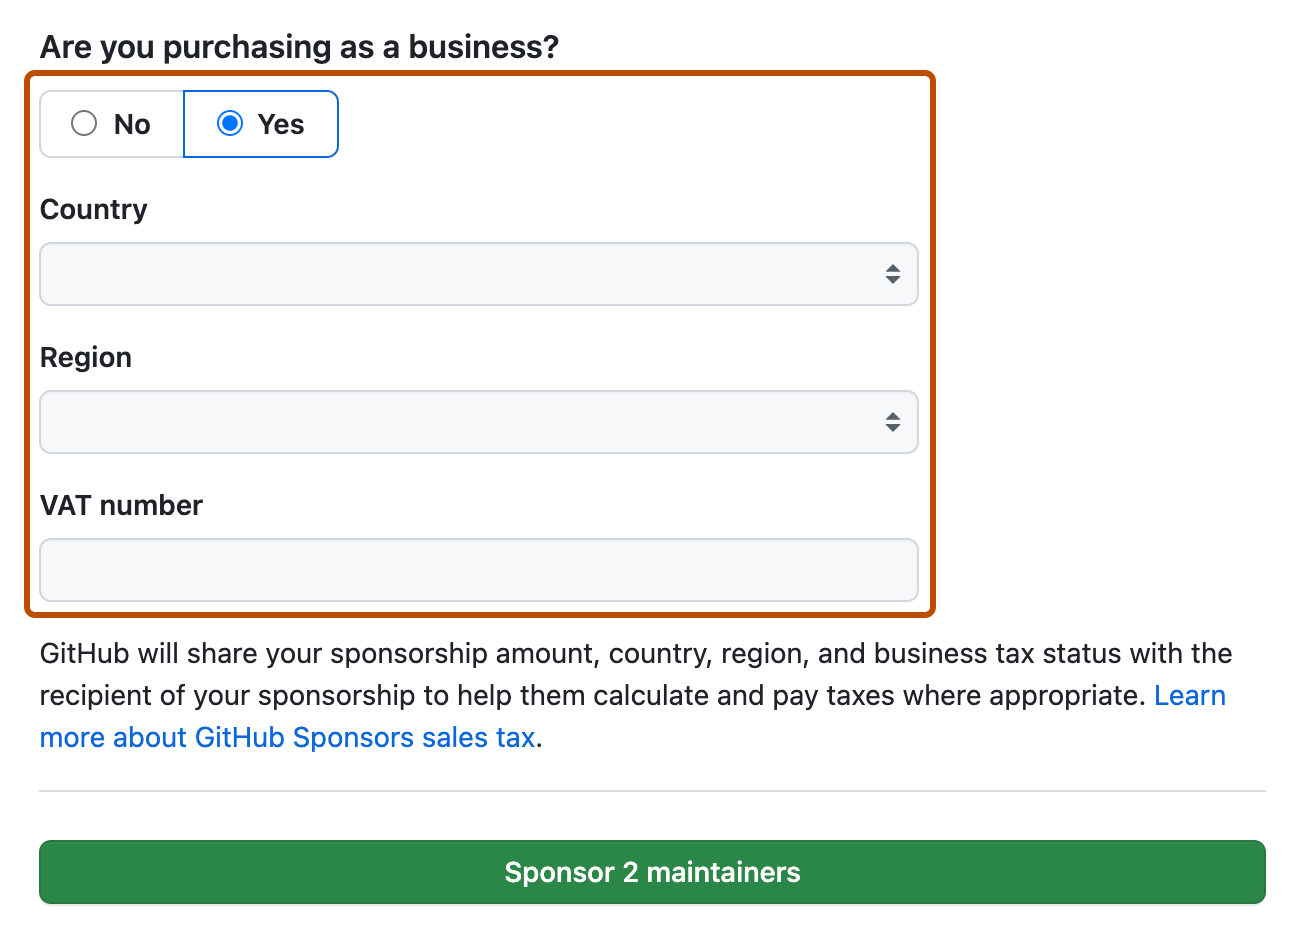 赞助结帐页面的屏幕截图。 表示以企业身份赞助的字段以深橙色标出。